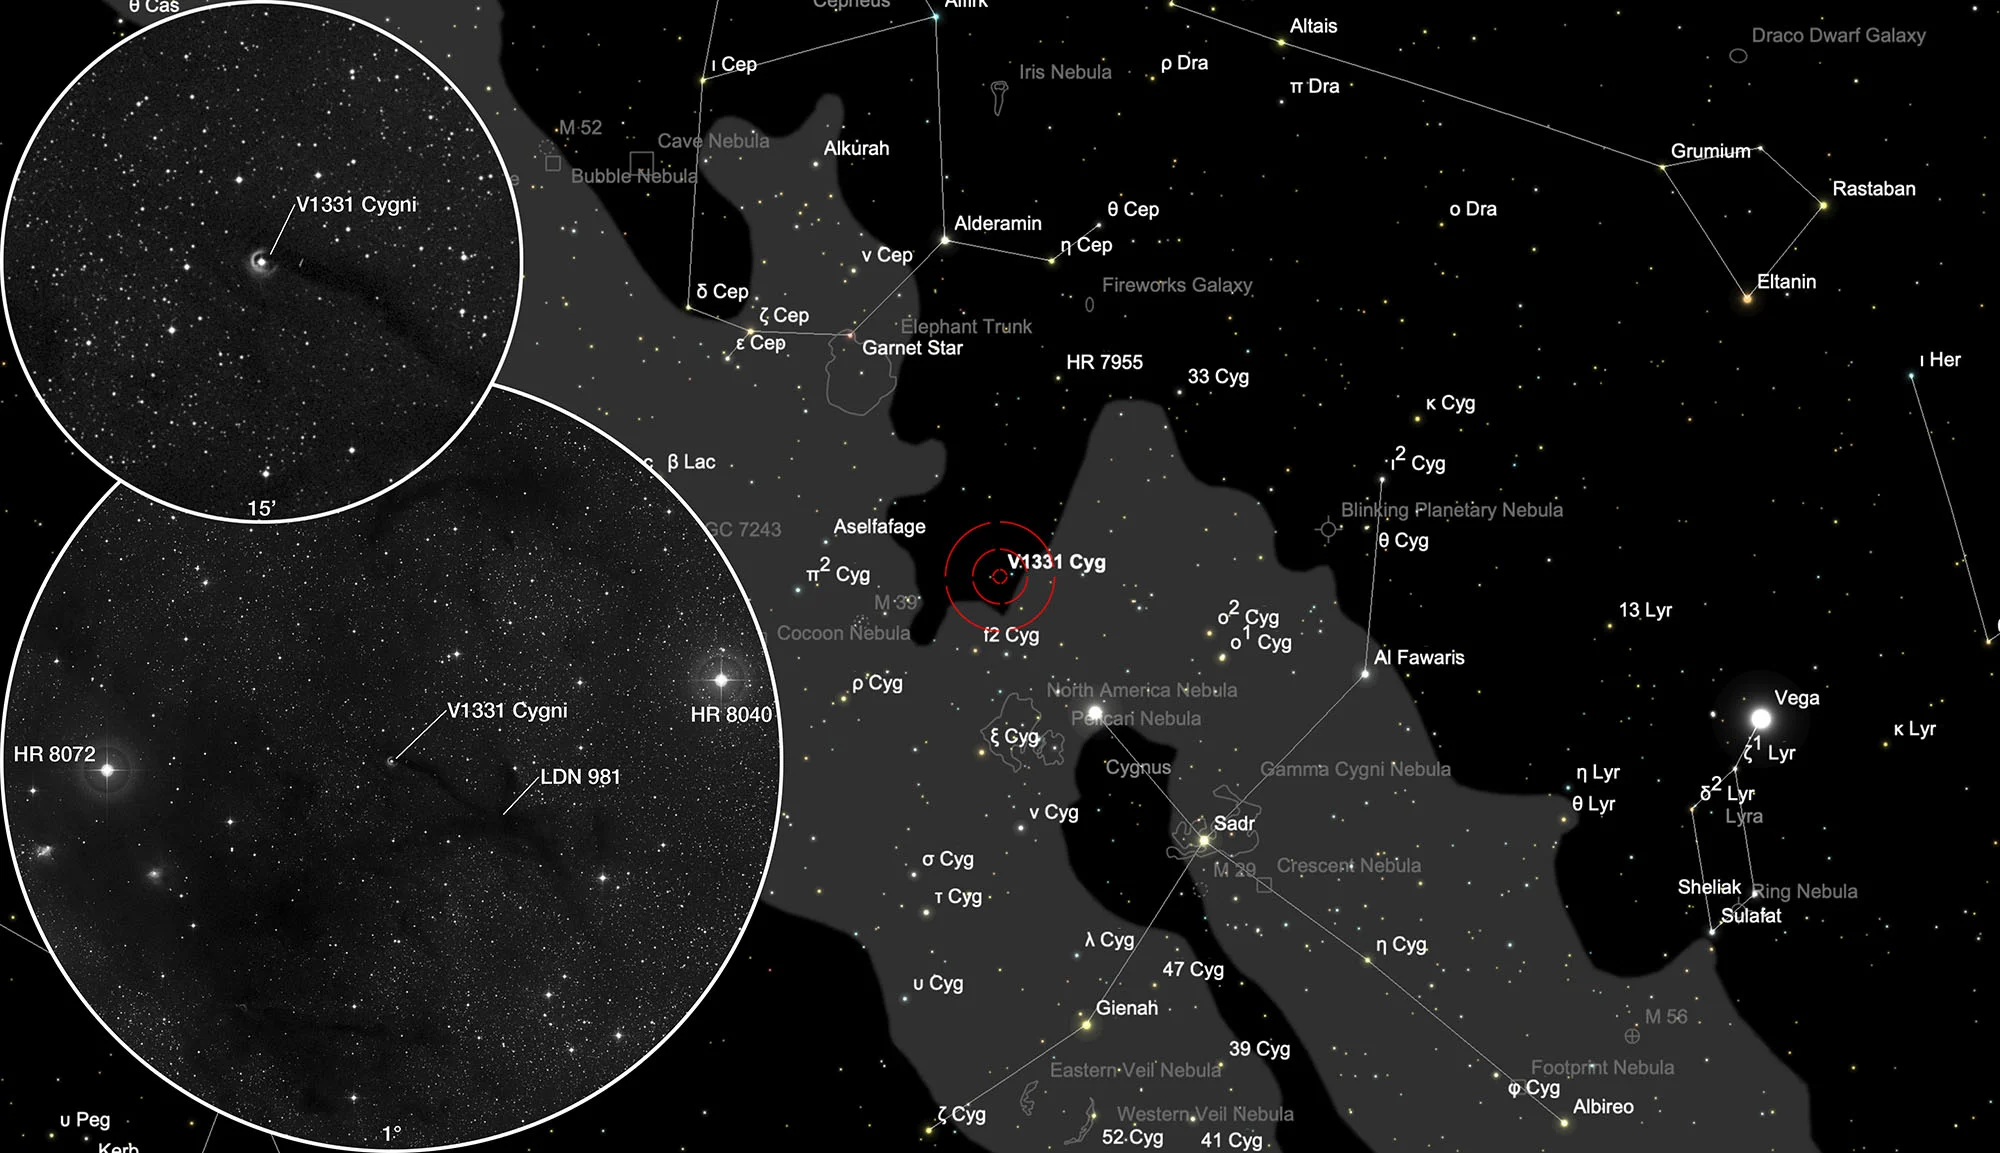 Karte V1331 Cygni (LkHα 120)